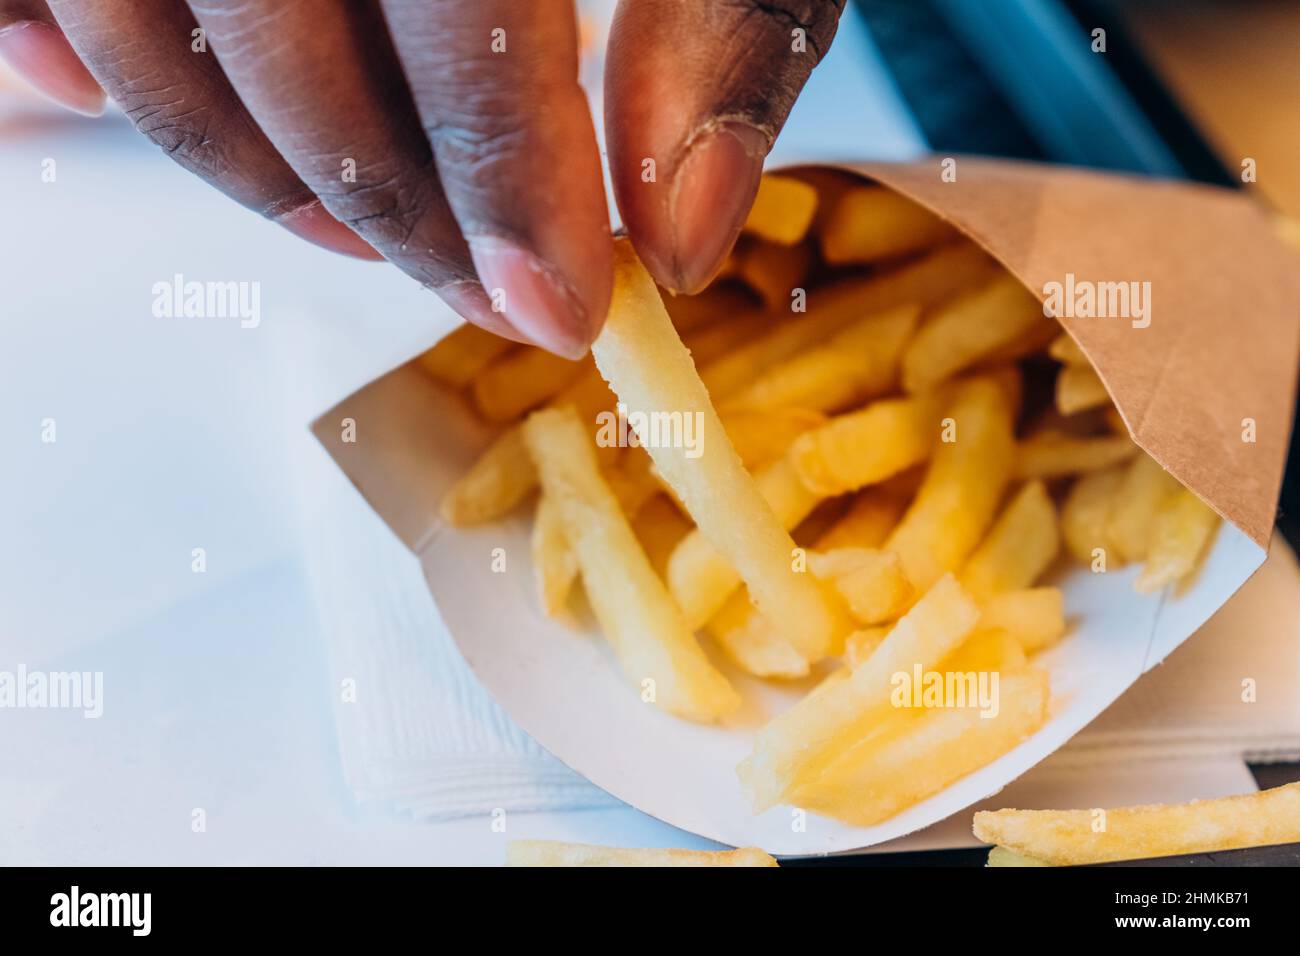 El joven afroamericano toma deliciosas patatas fritas frescas del recipiente de papel en la mesa en una moderna cafetería con vista muy cercana Foto de stock